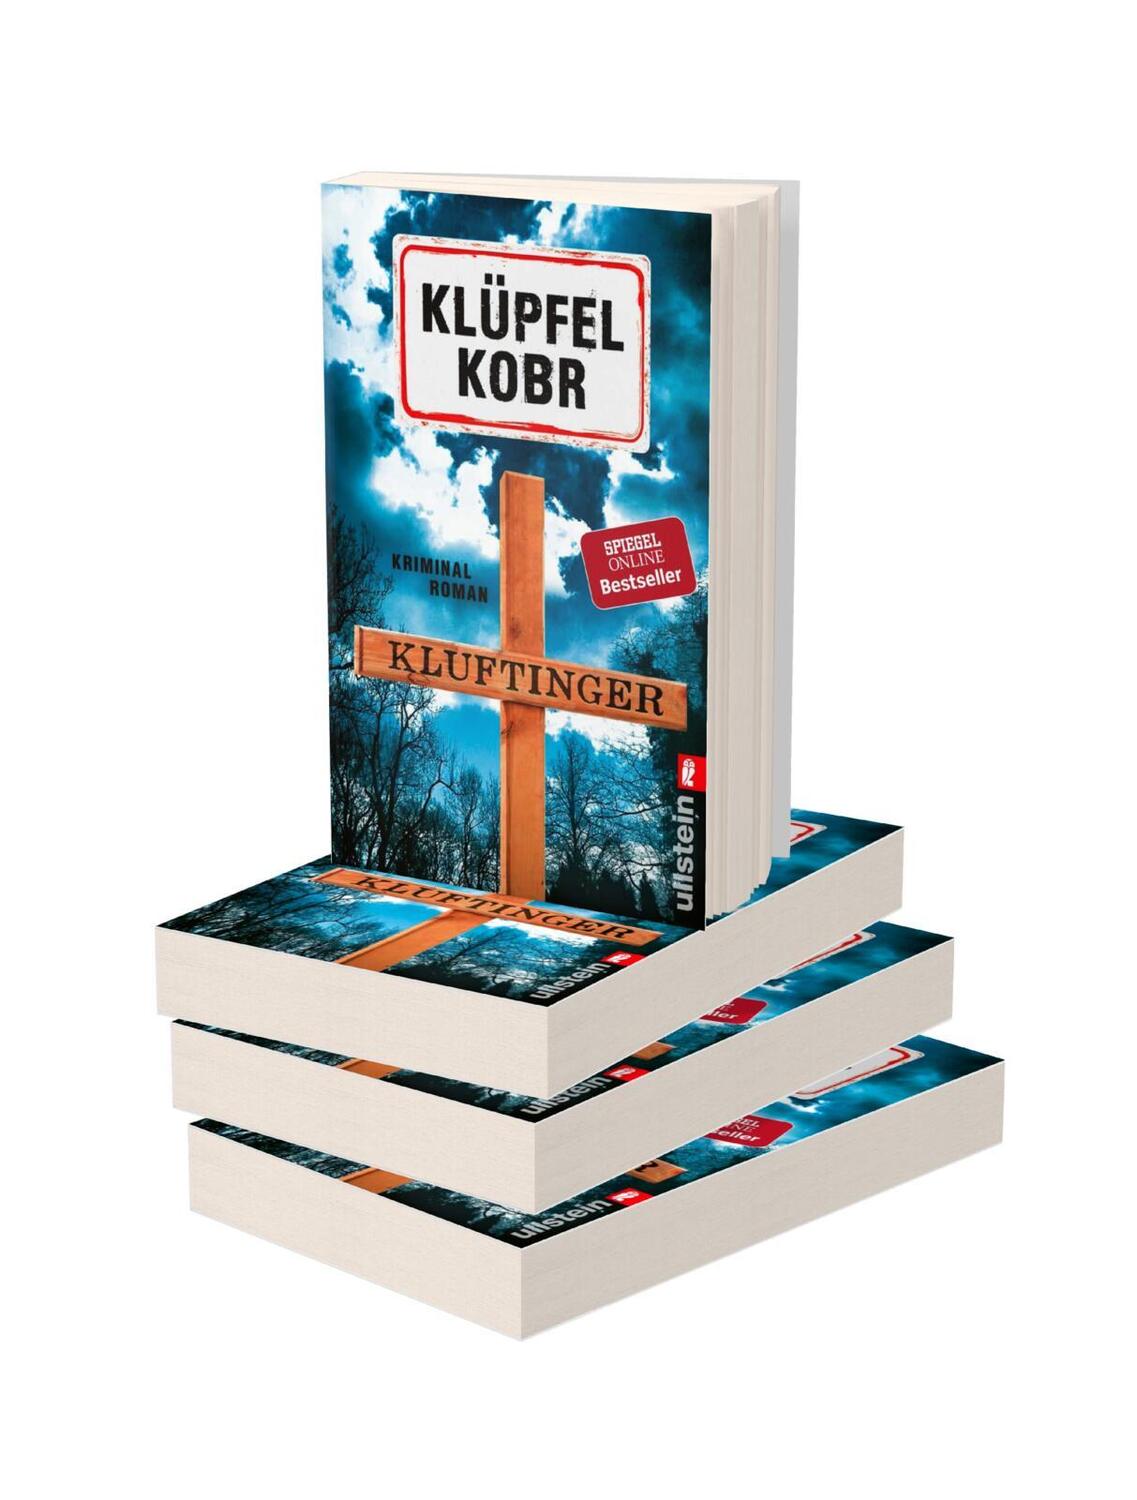 Bild: 9783548060323 | Kluftinger | Kriminalroman | Volker Klüpfel (u. a.) | Taschenbuch